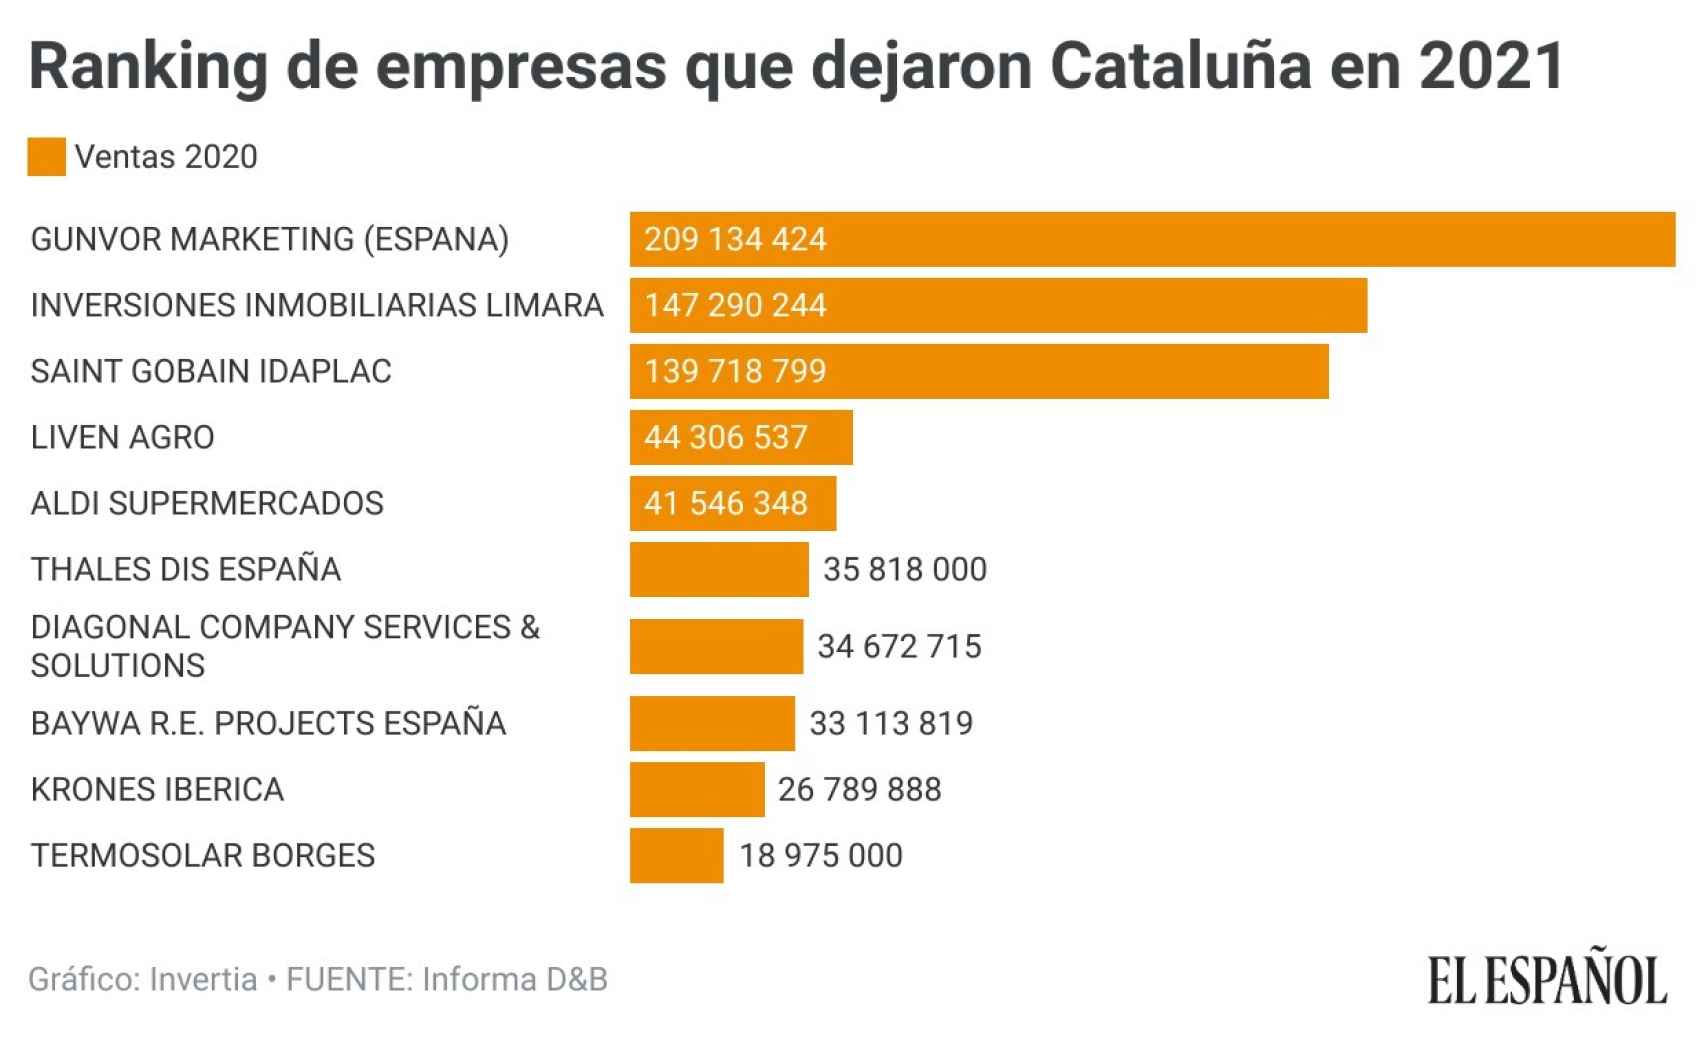 Ranking de las empresas, por ventas, de las empresas que abandonaron Cataluña en 2011.